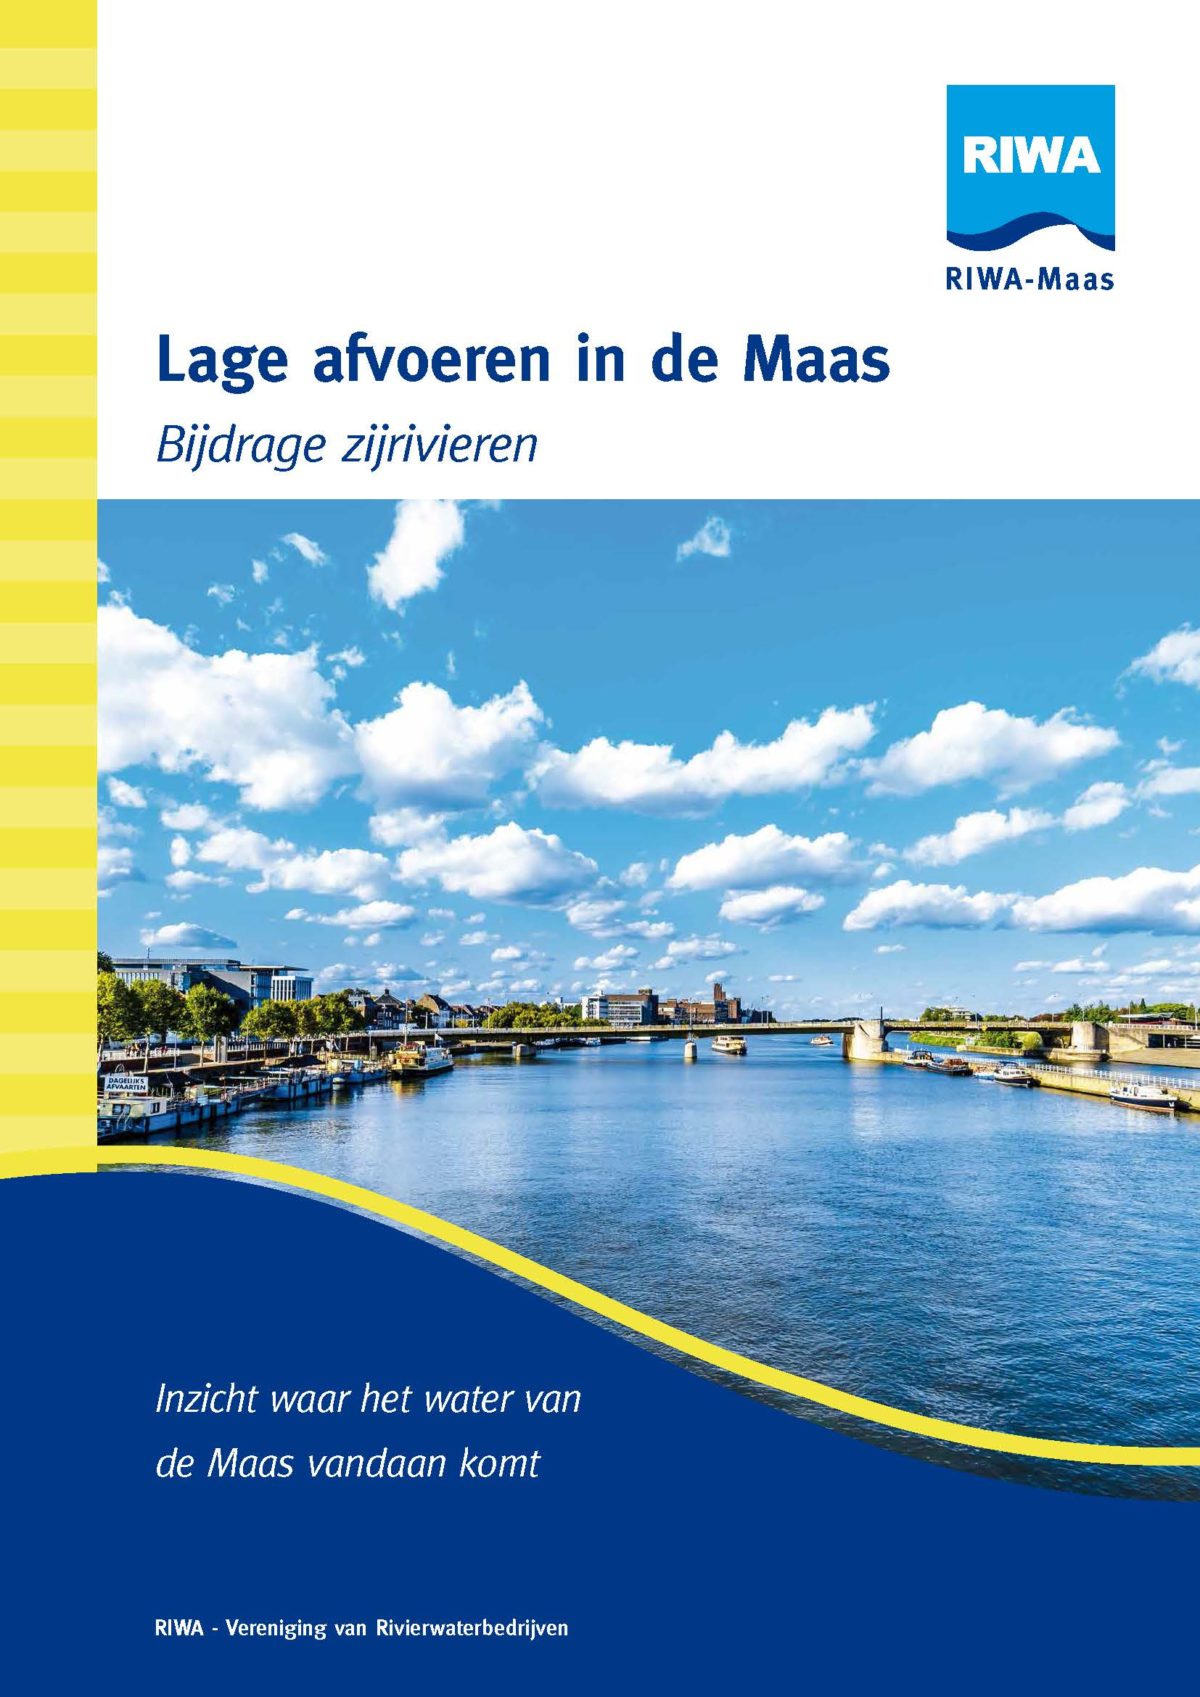 Onderzoek naar de bijdragen van zijrivieren van de Maas tijdens lage afvoeren om inzicht te krijgen in de gevolgen van klimaatverandering voor gebruikers van de Maas